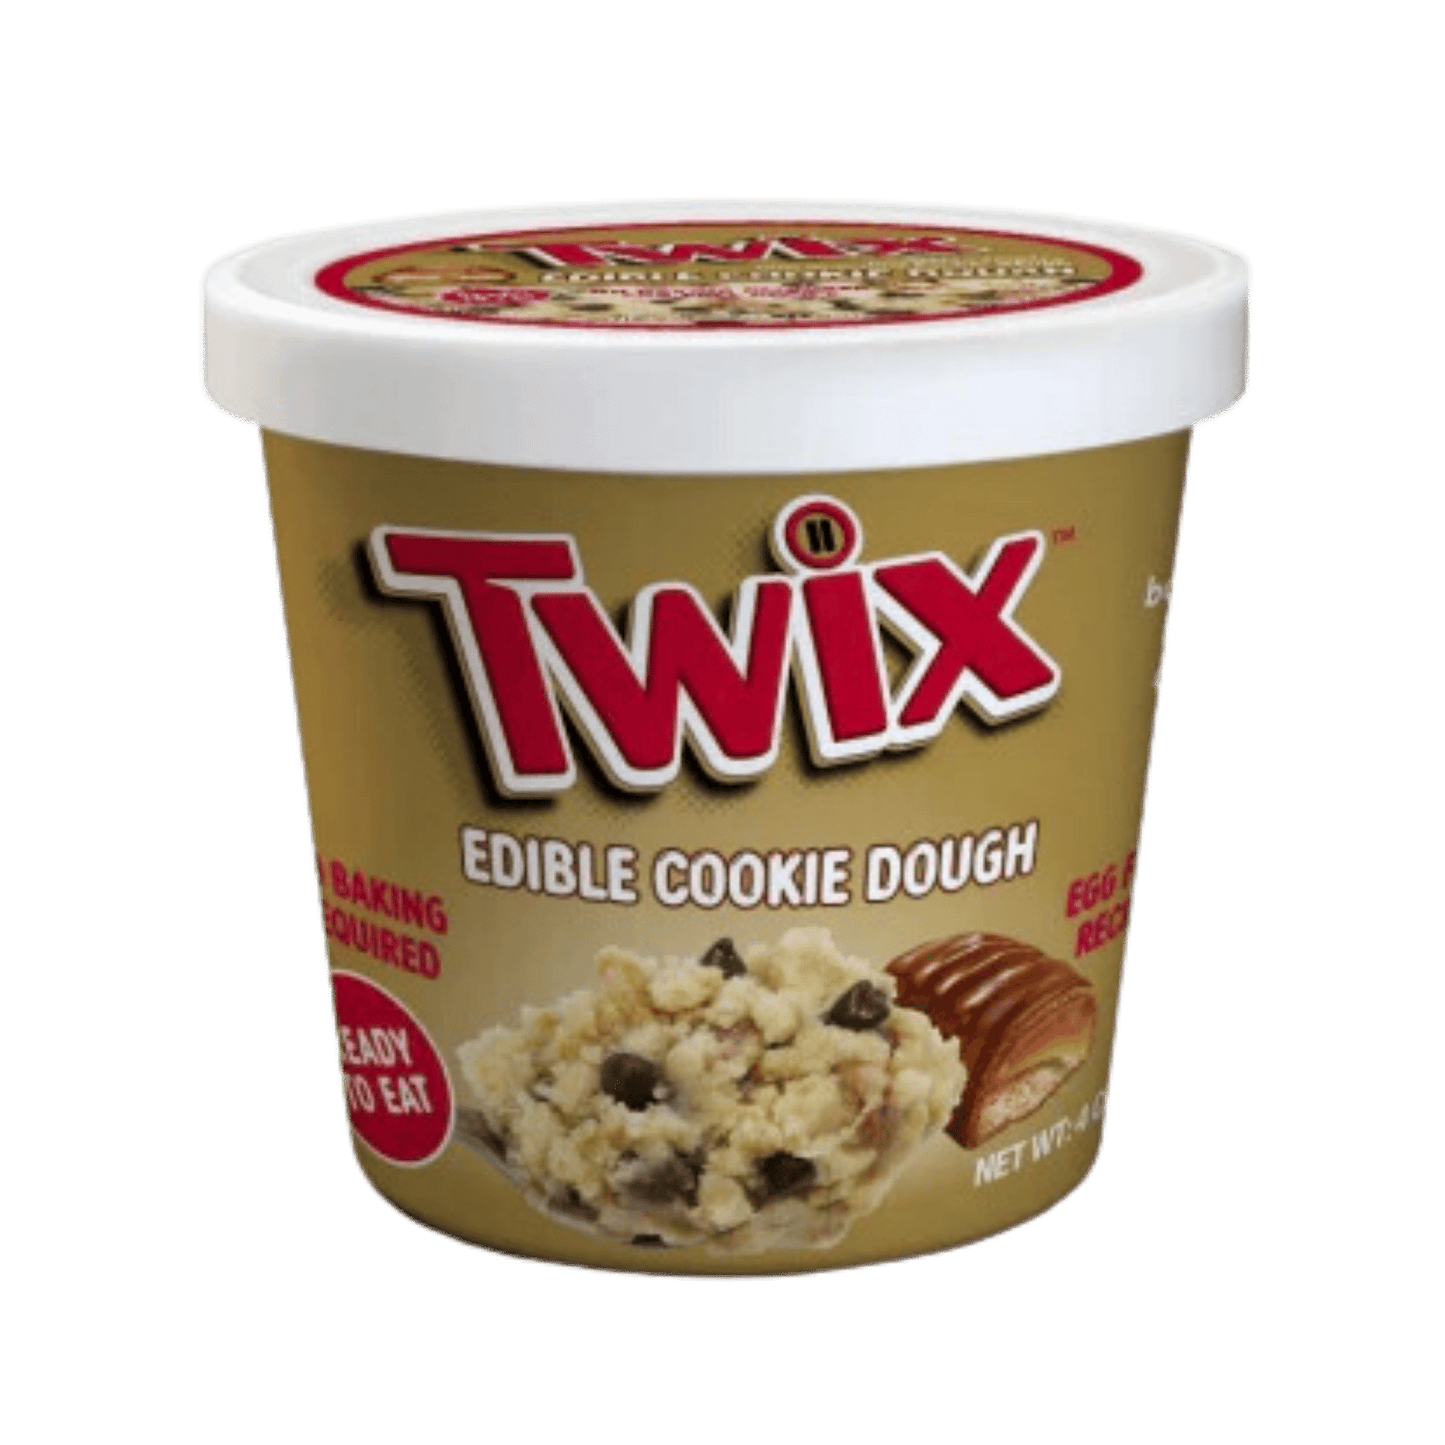 Edible Cookie Dough - Twix (8x4oz)